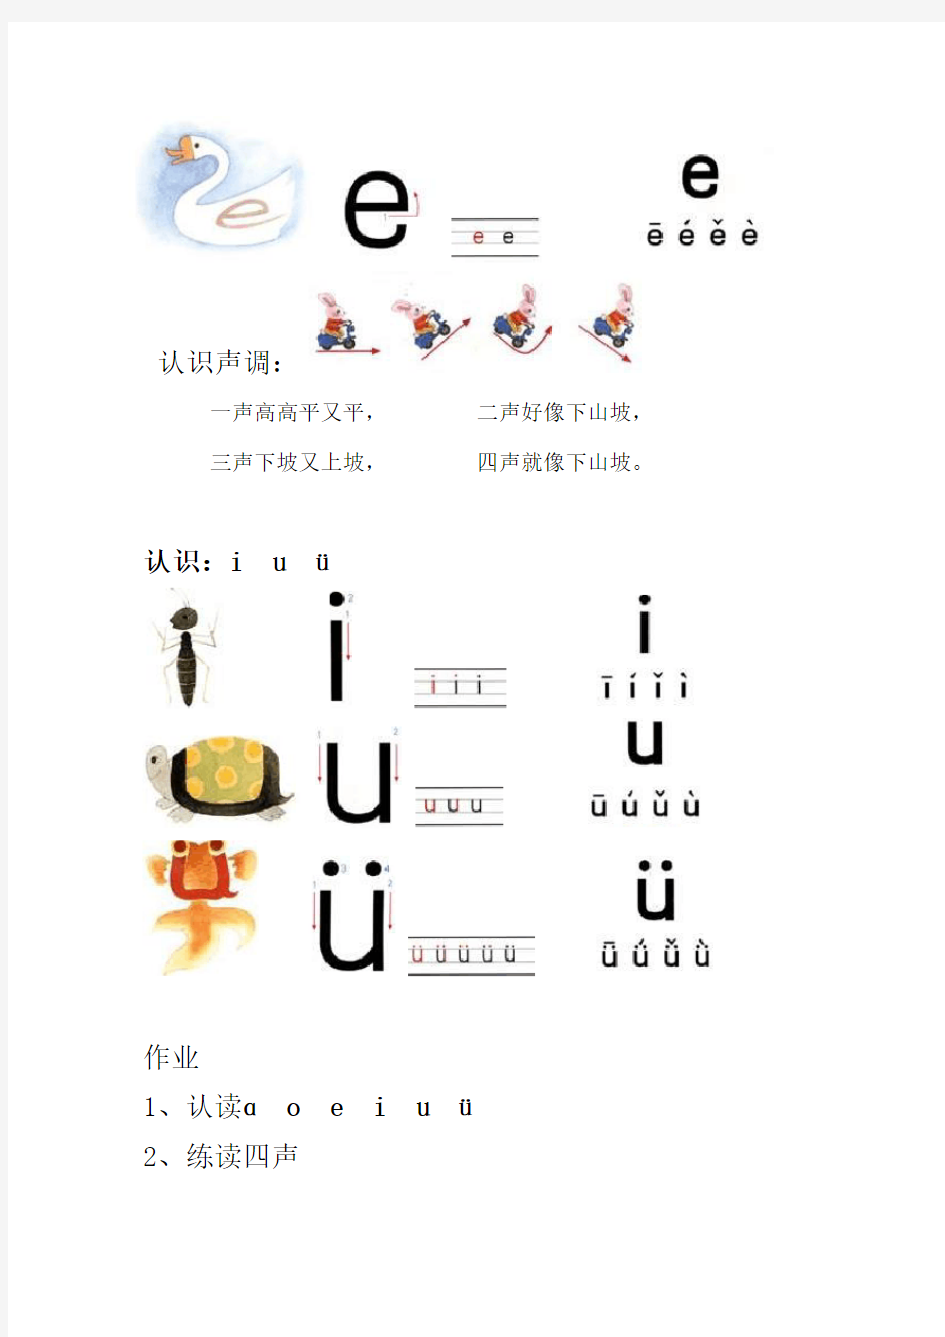 (完整版)完整汉语拼音教材32页彩图版